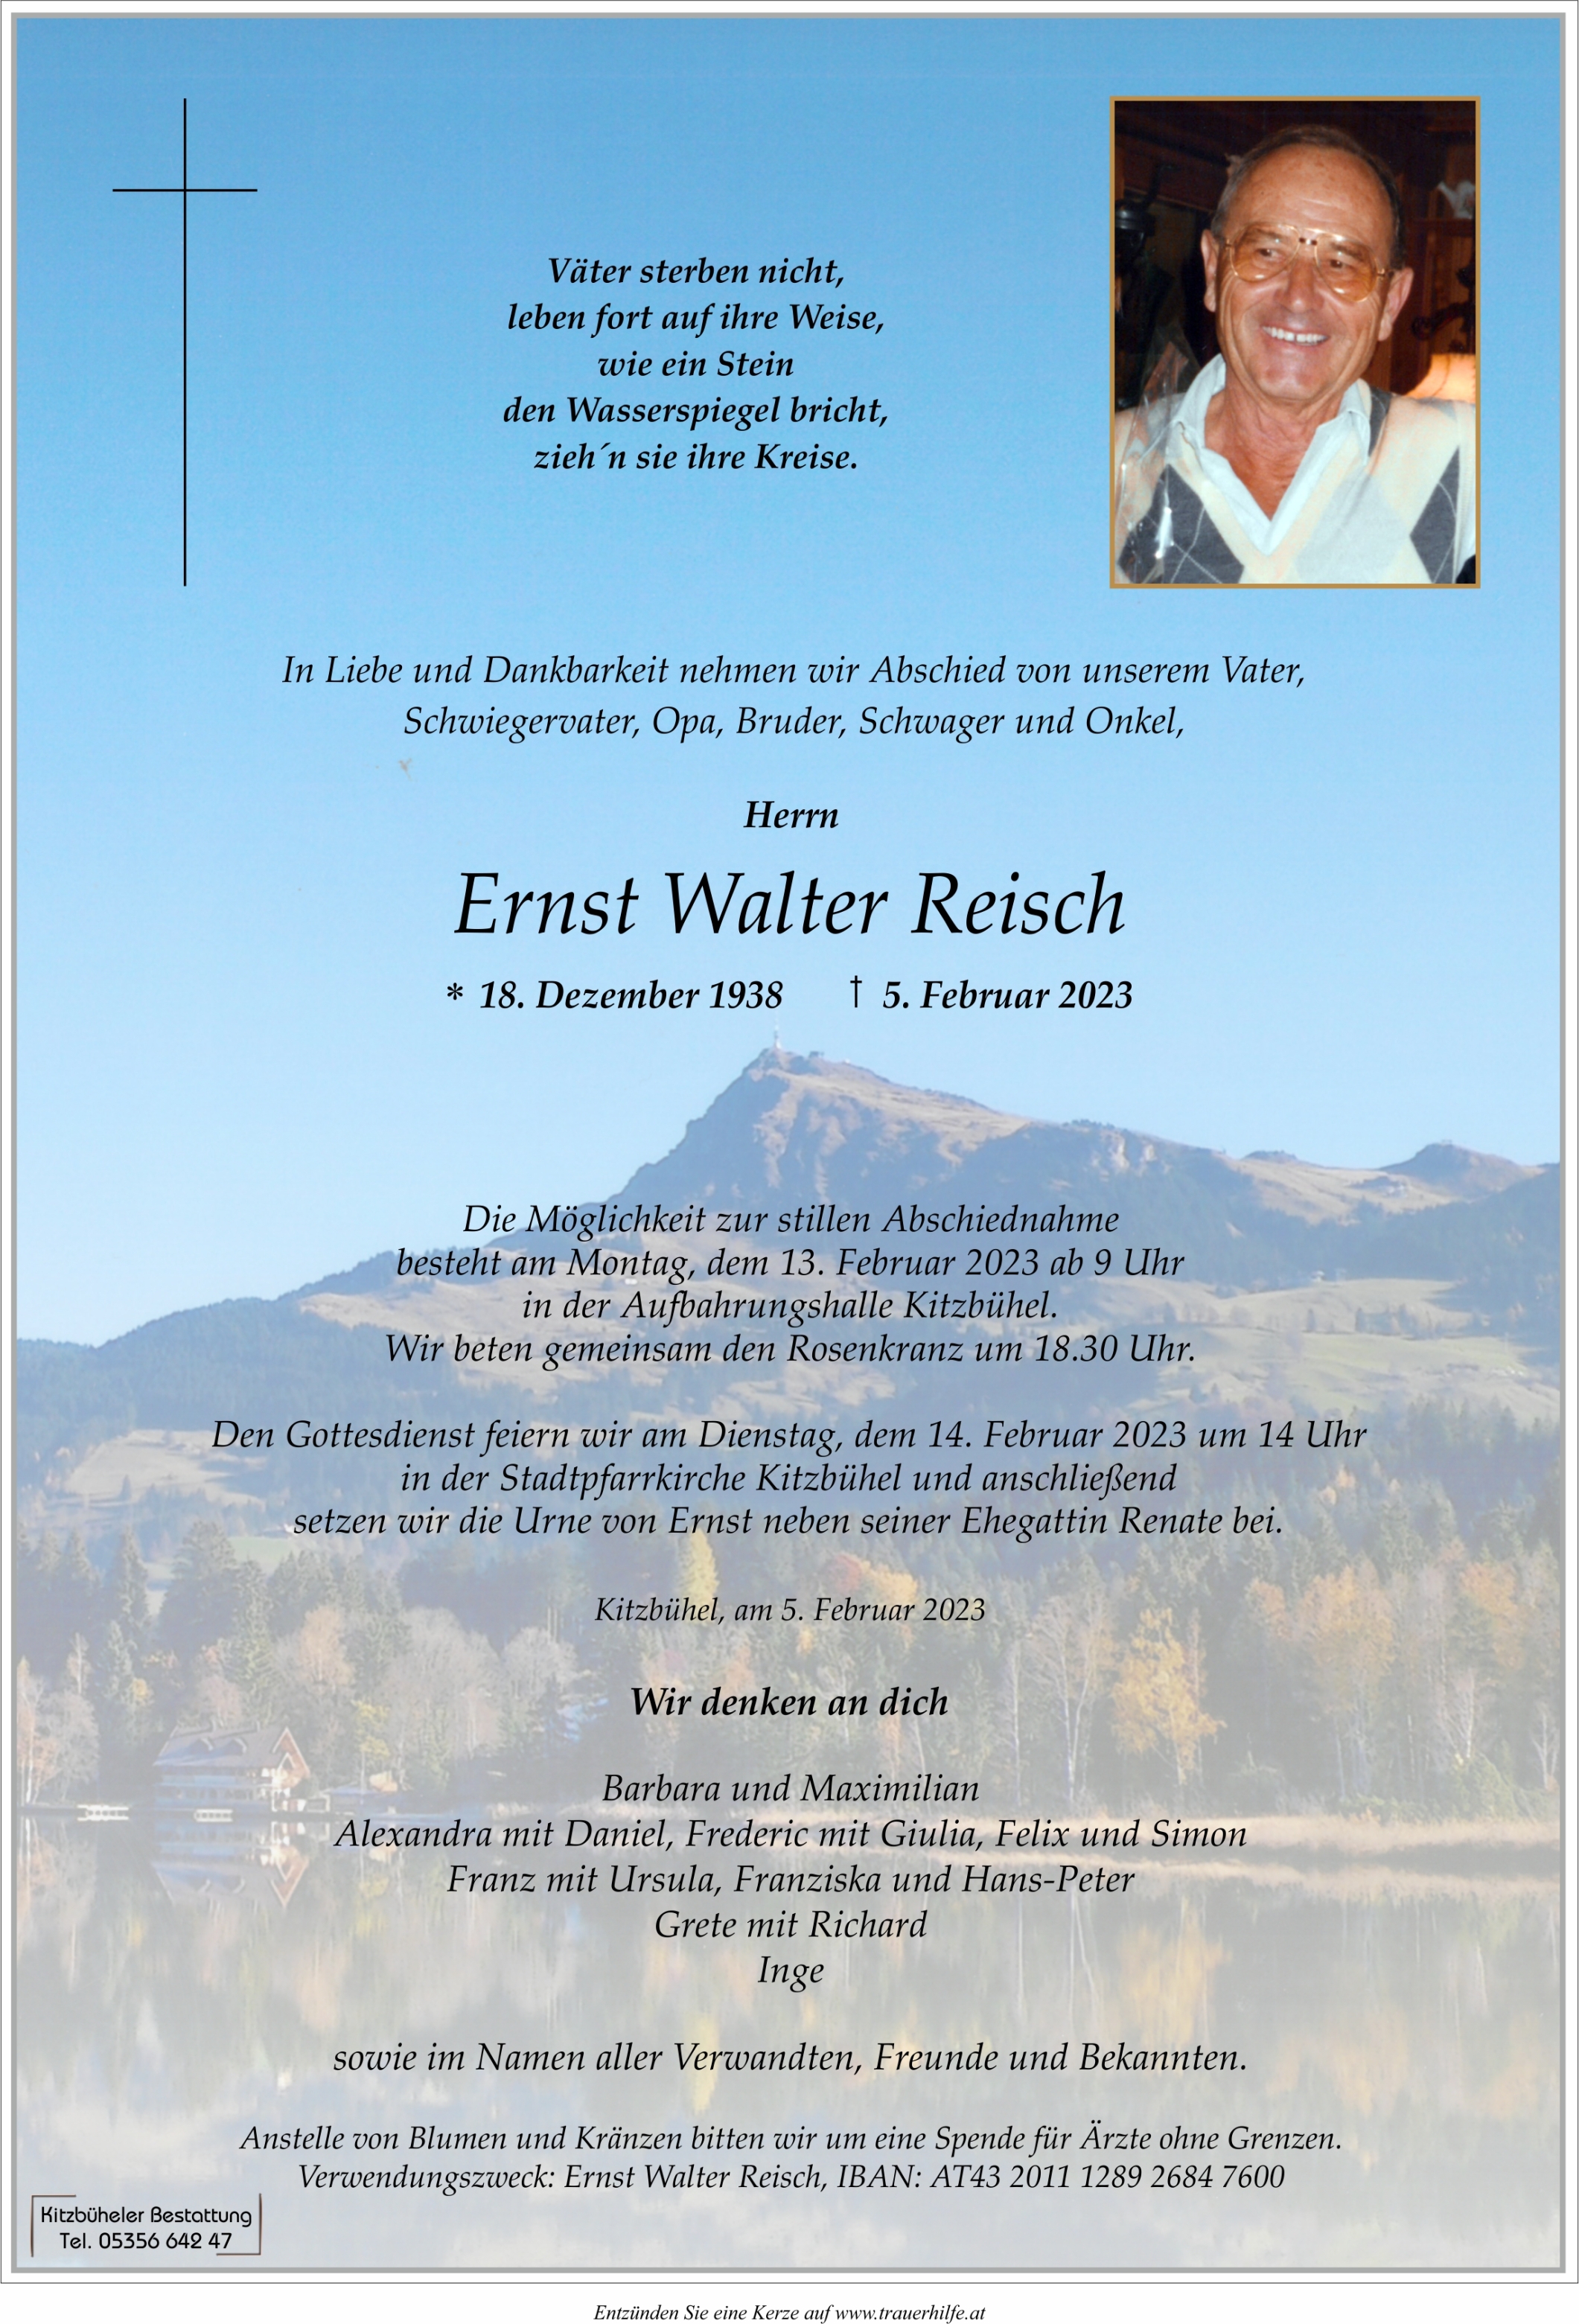 Ernst Walter Reisch